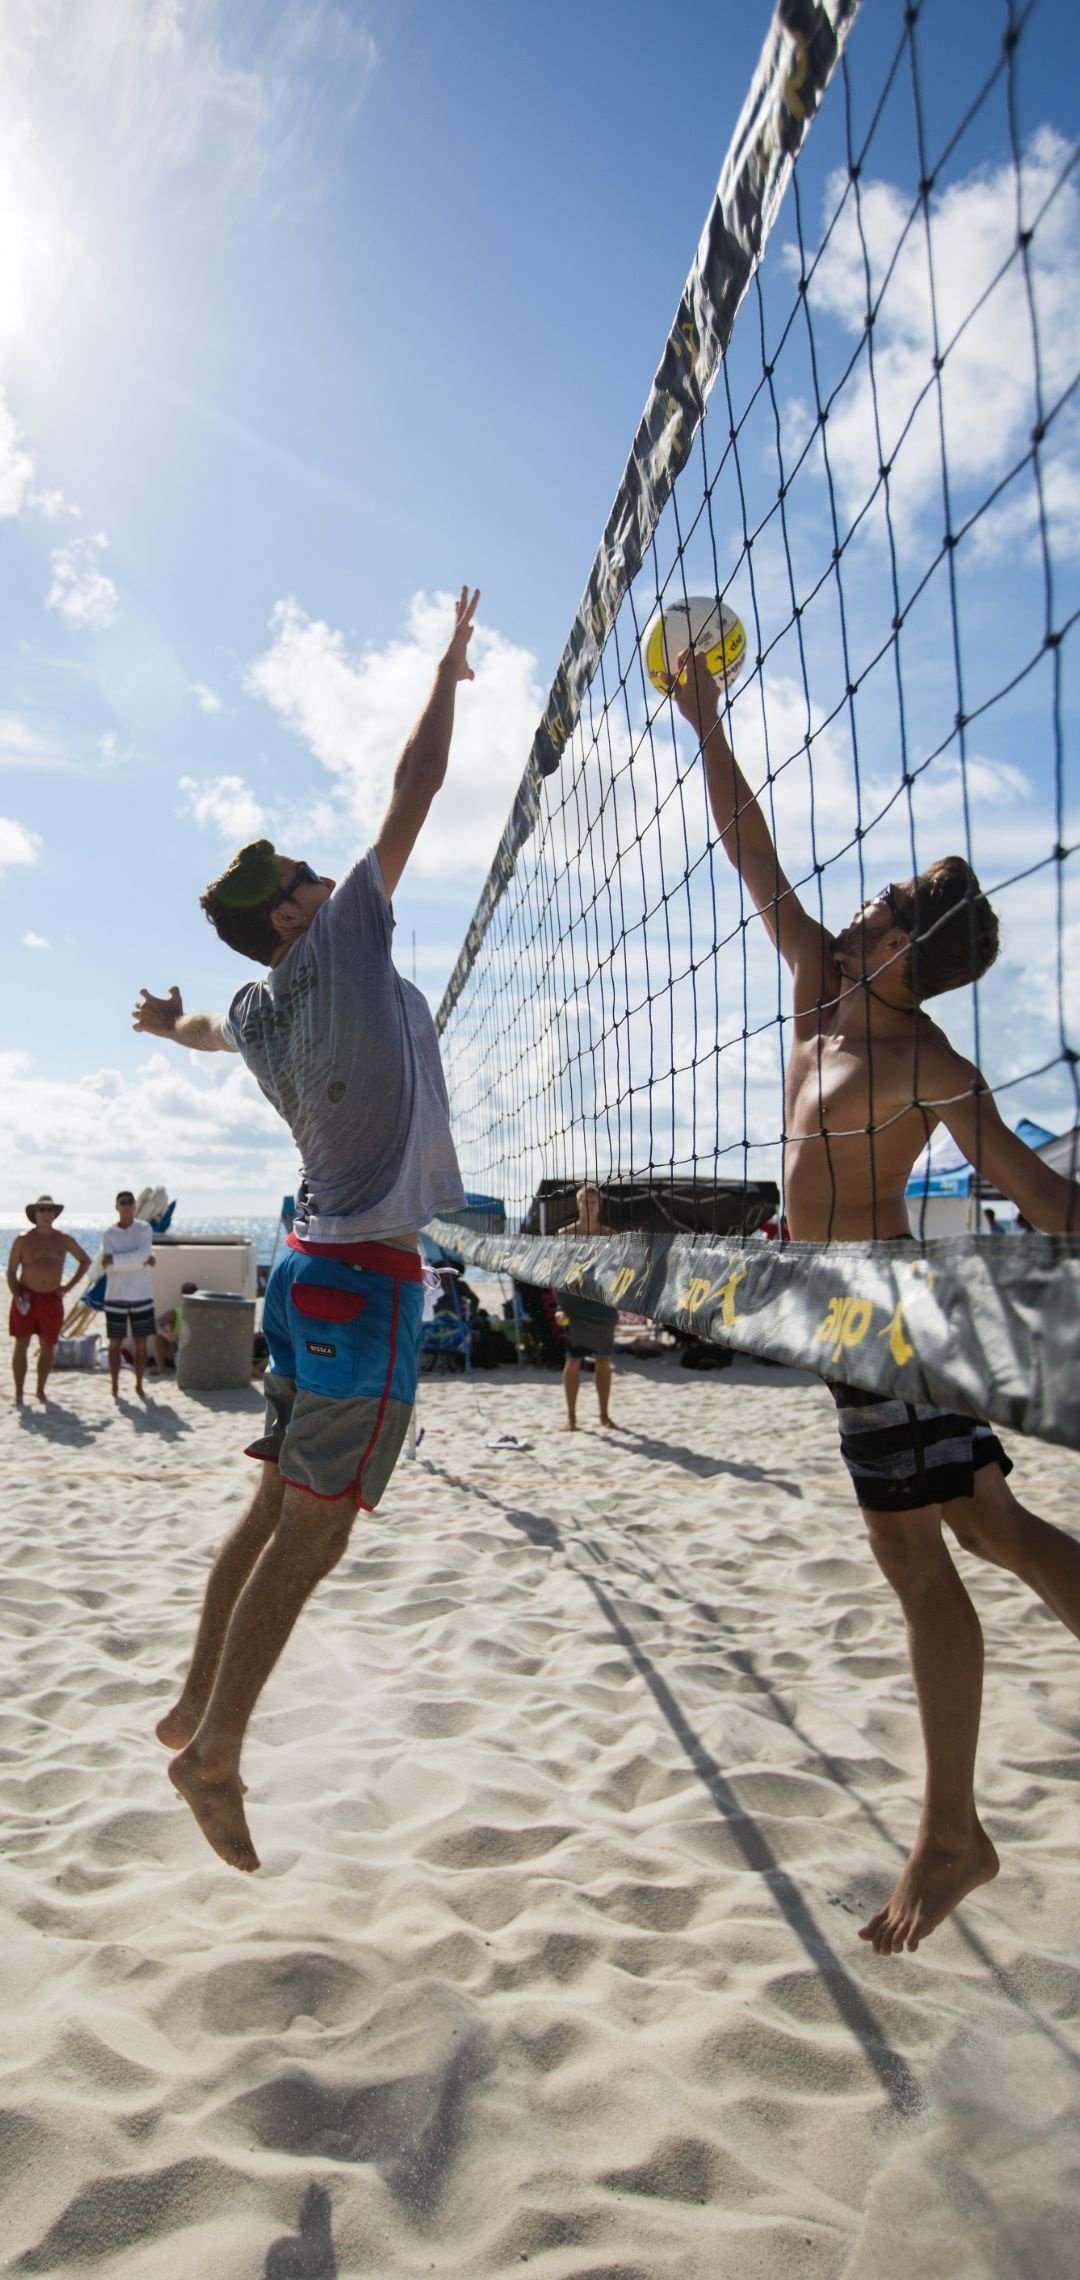 Beach Volleyball: Sports Activities, Men's Volleyball Competition on a beach, Volleyball Athletes. 1080x2280 HD Wallpaper.